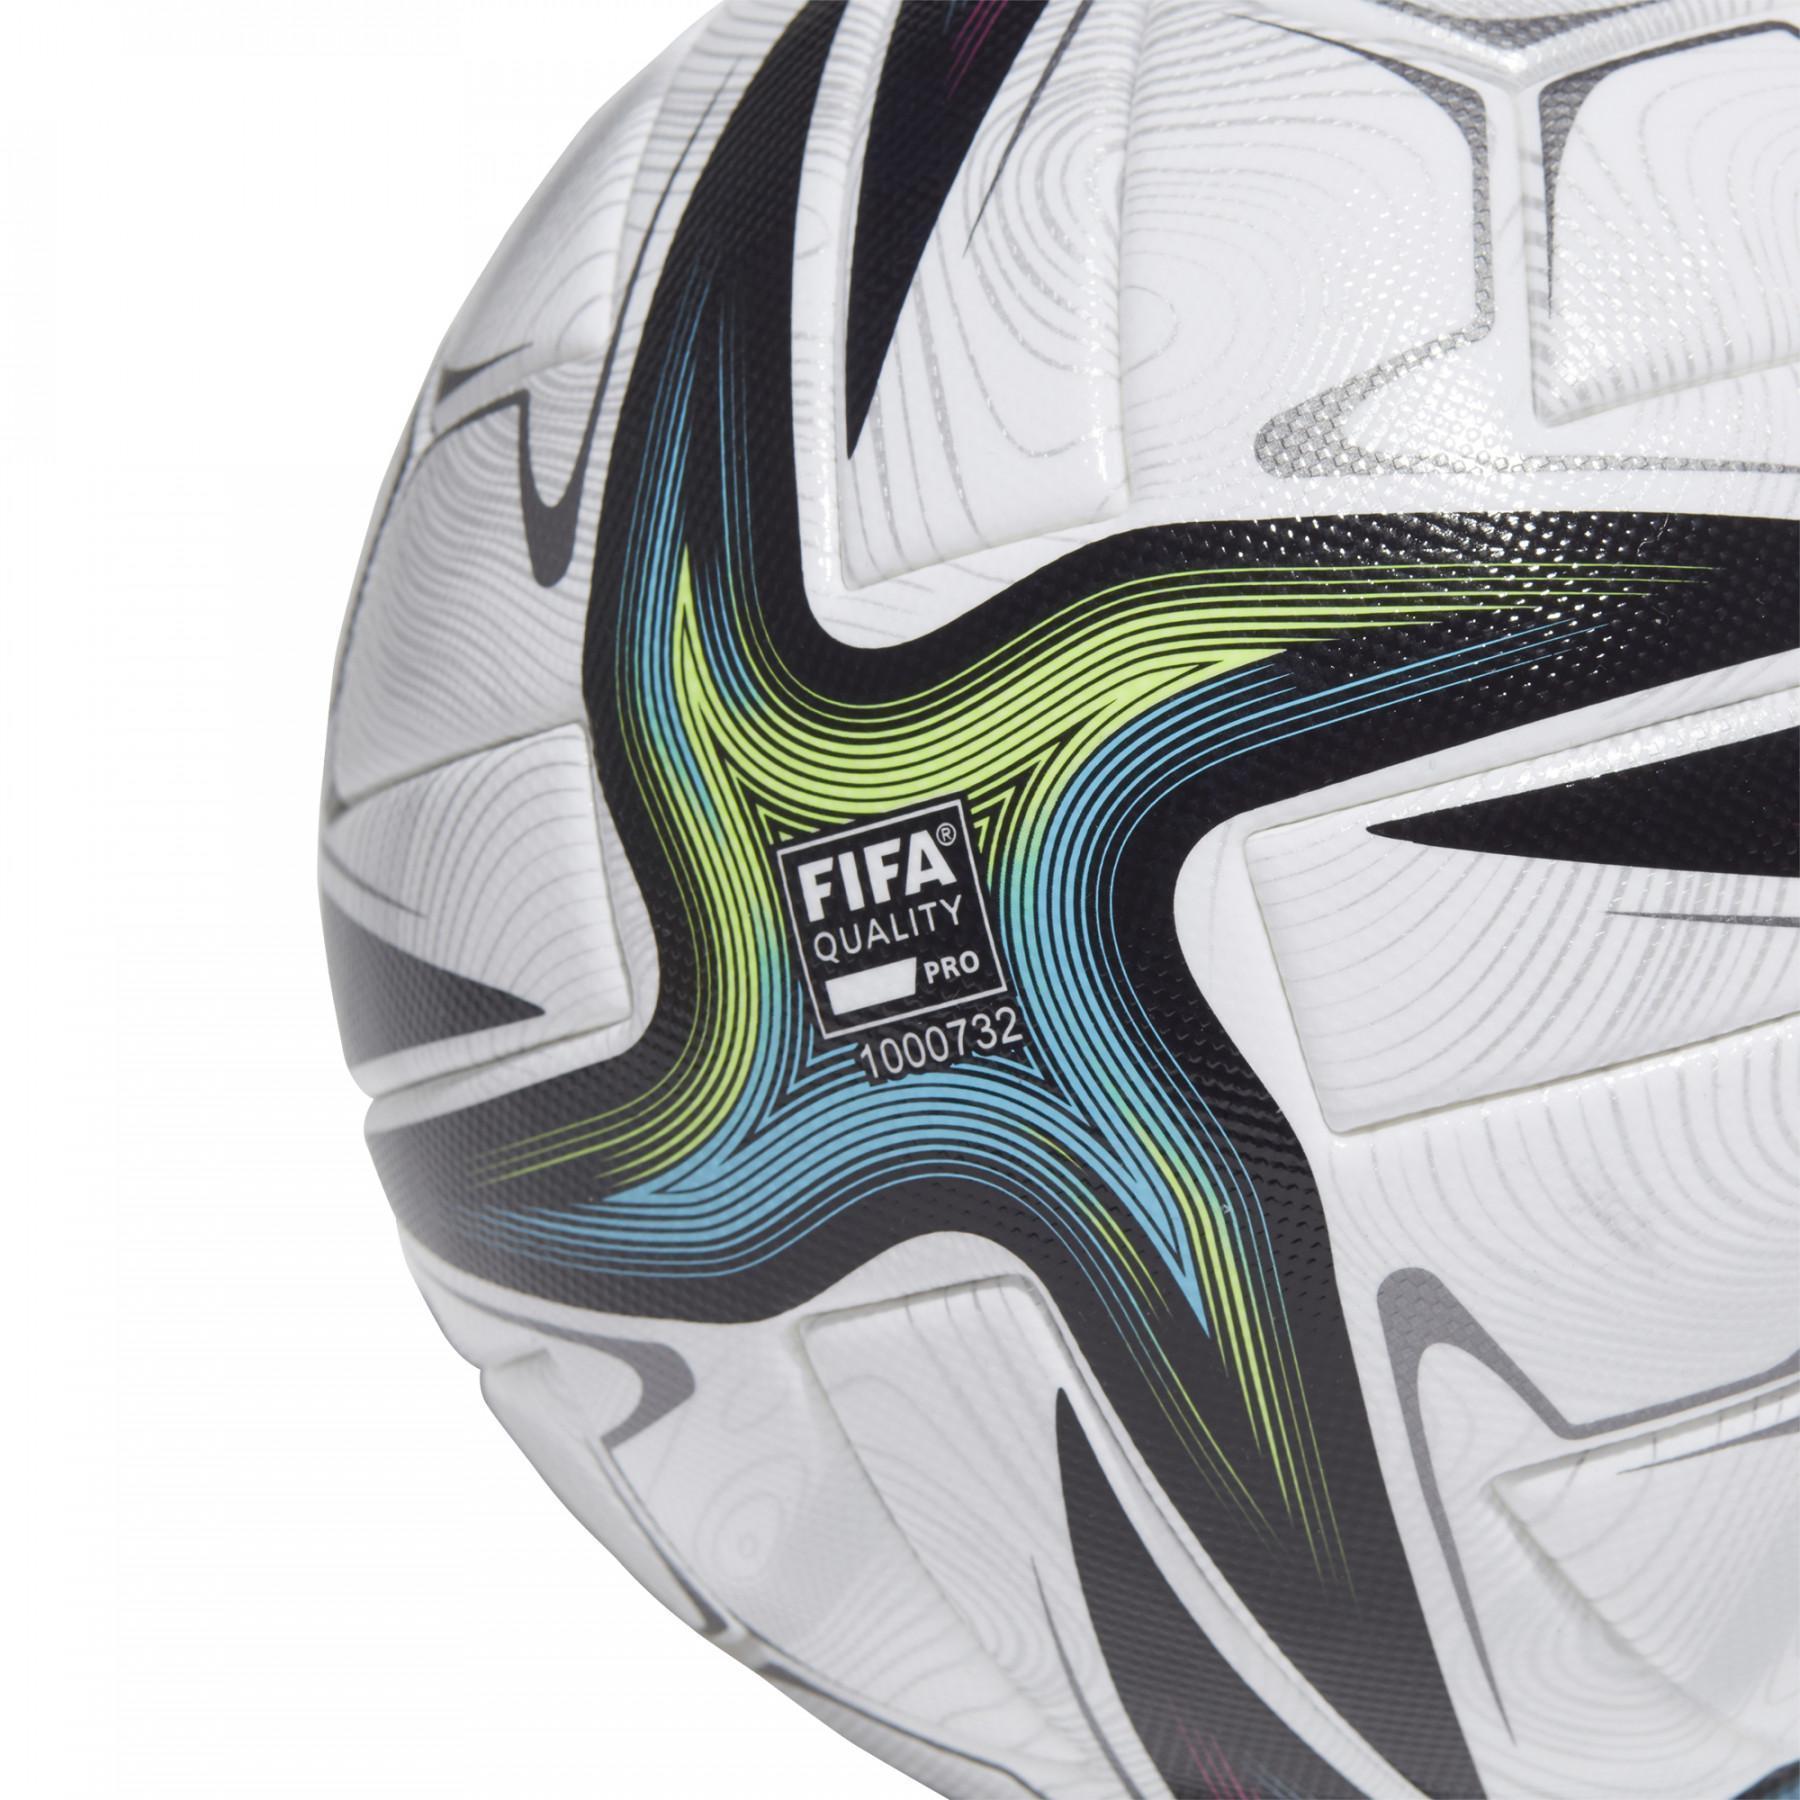 Pallone da calcio adidas Conext 21 Pro